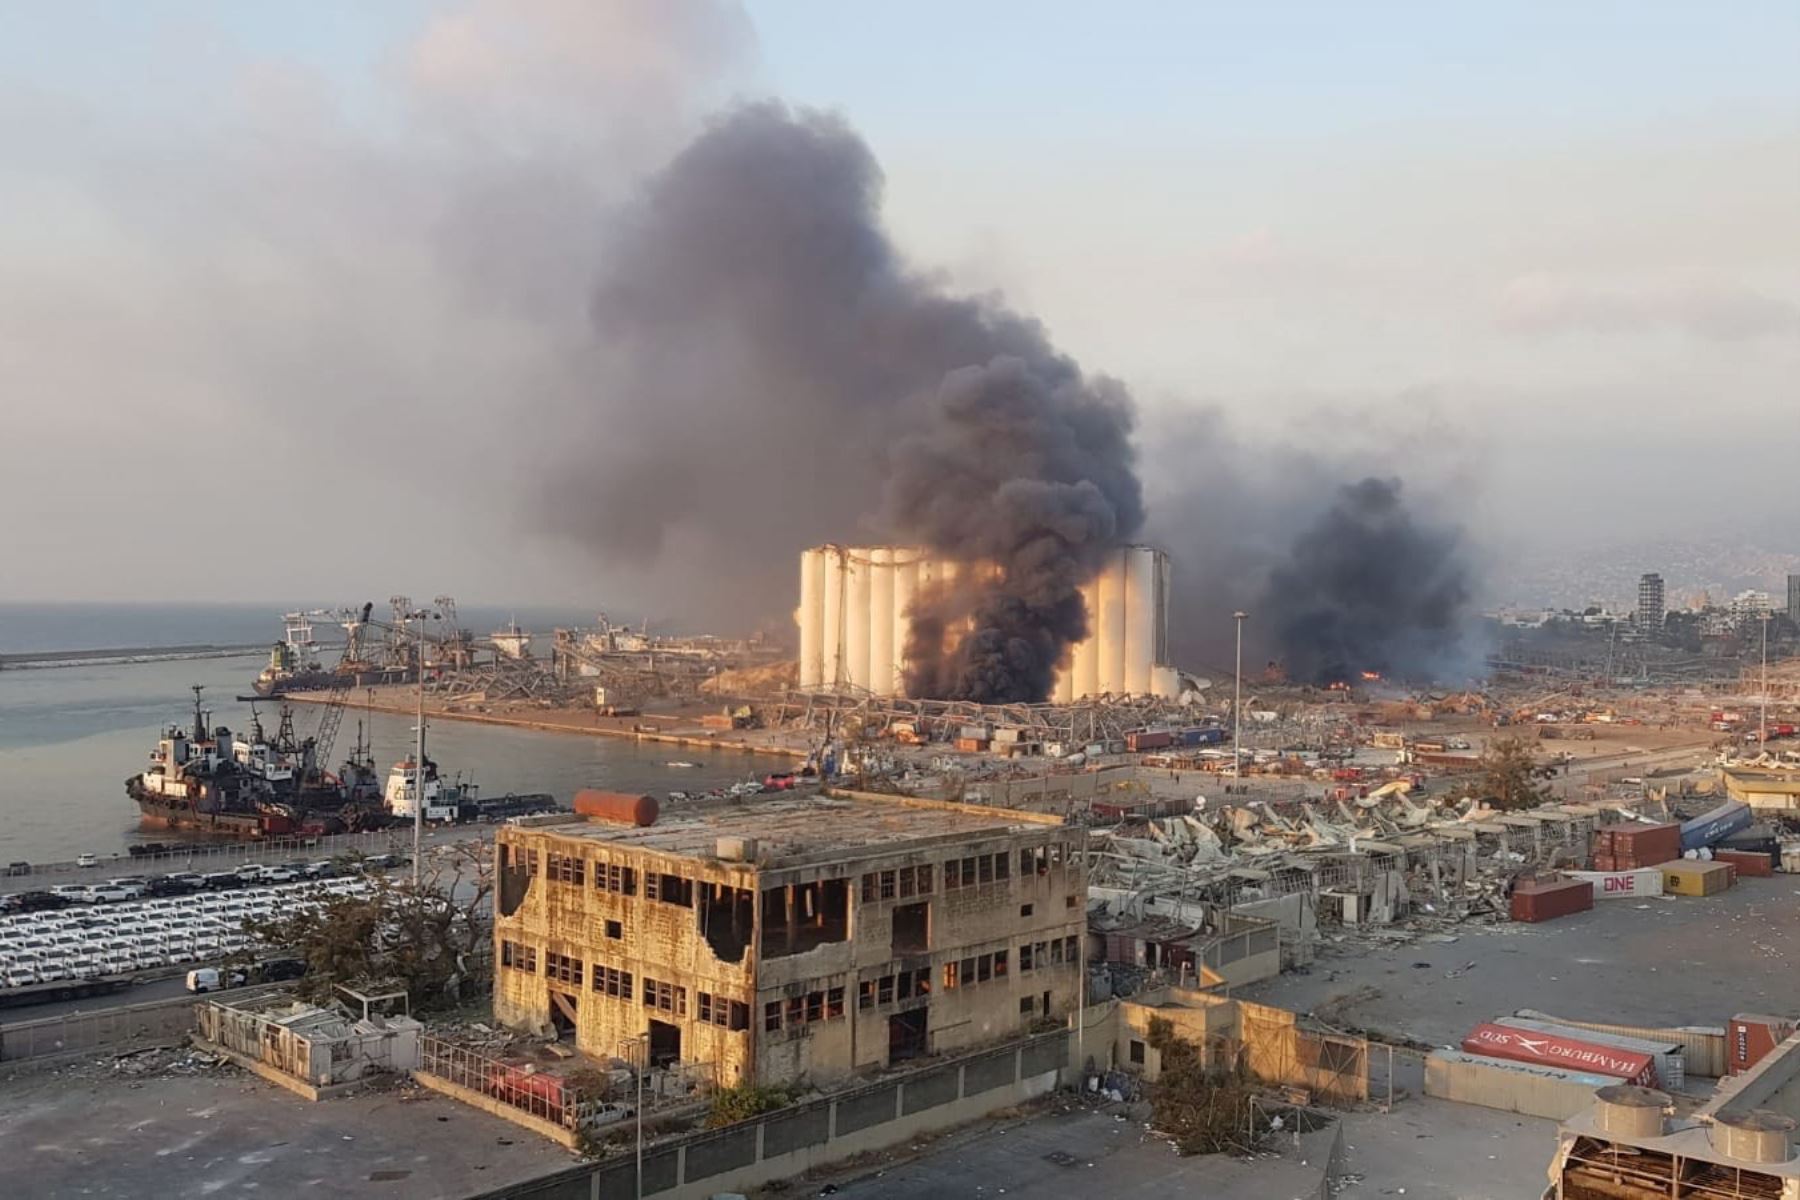 La imagen muestra el incendio y los escombros que dejó una gran explosión en el puerto de Beirut, Líbano. Foto: EFE